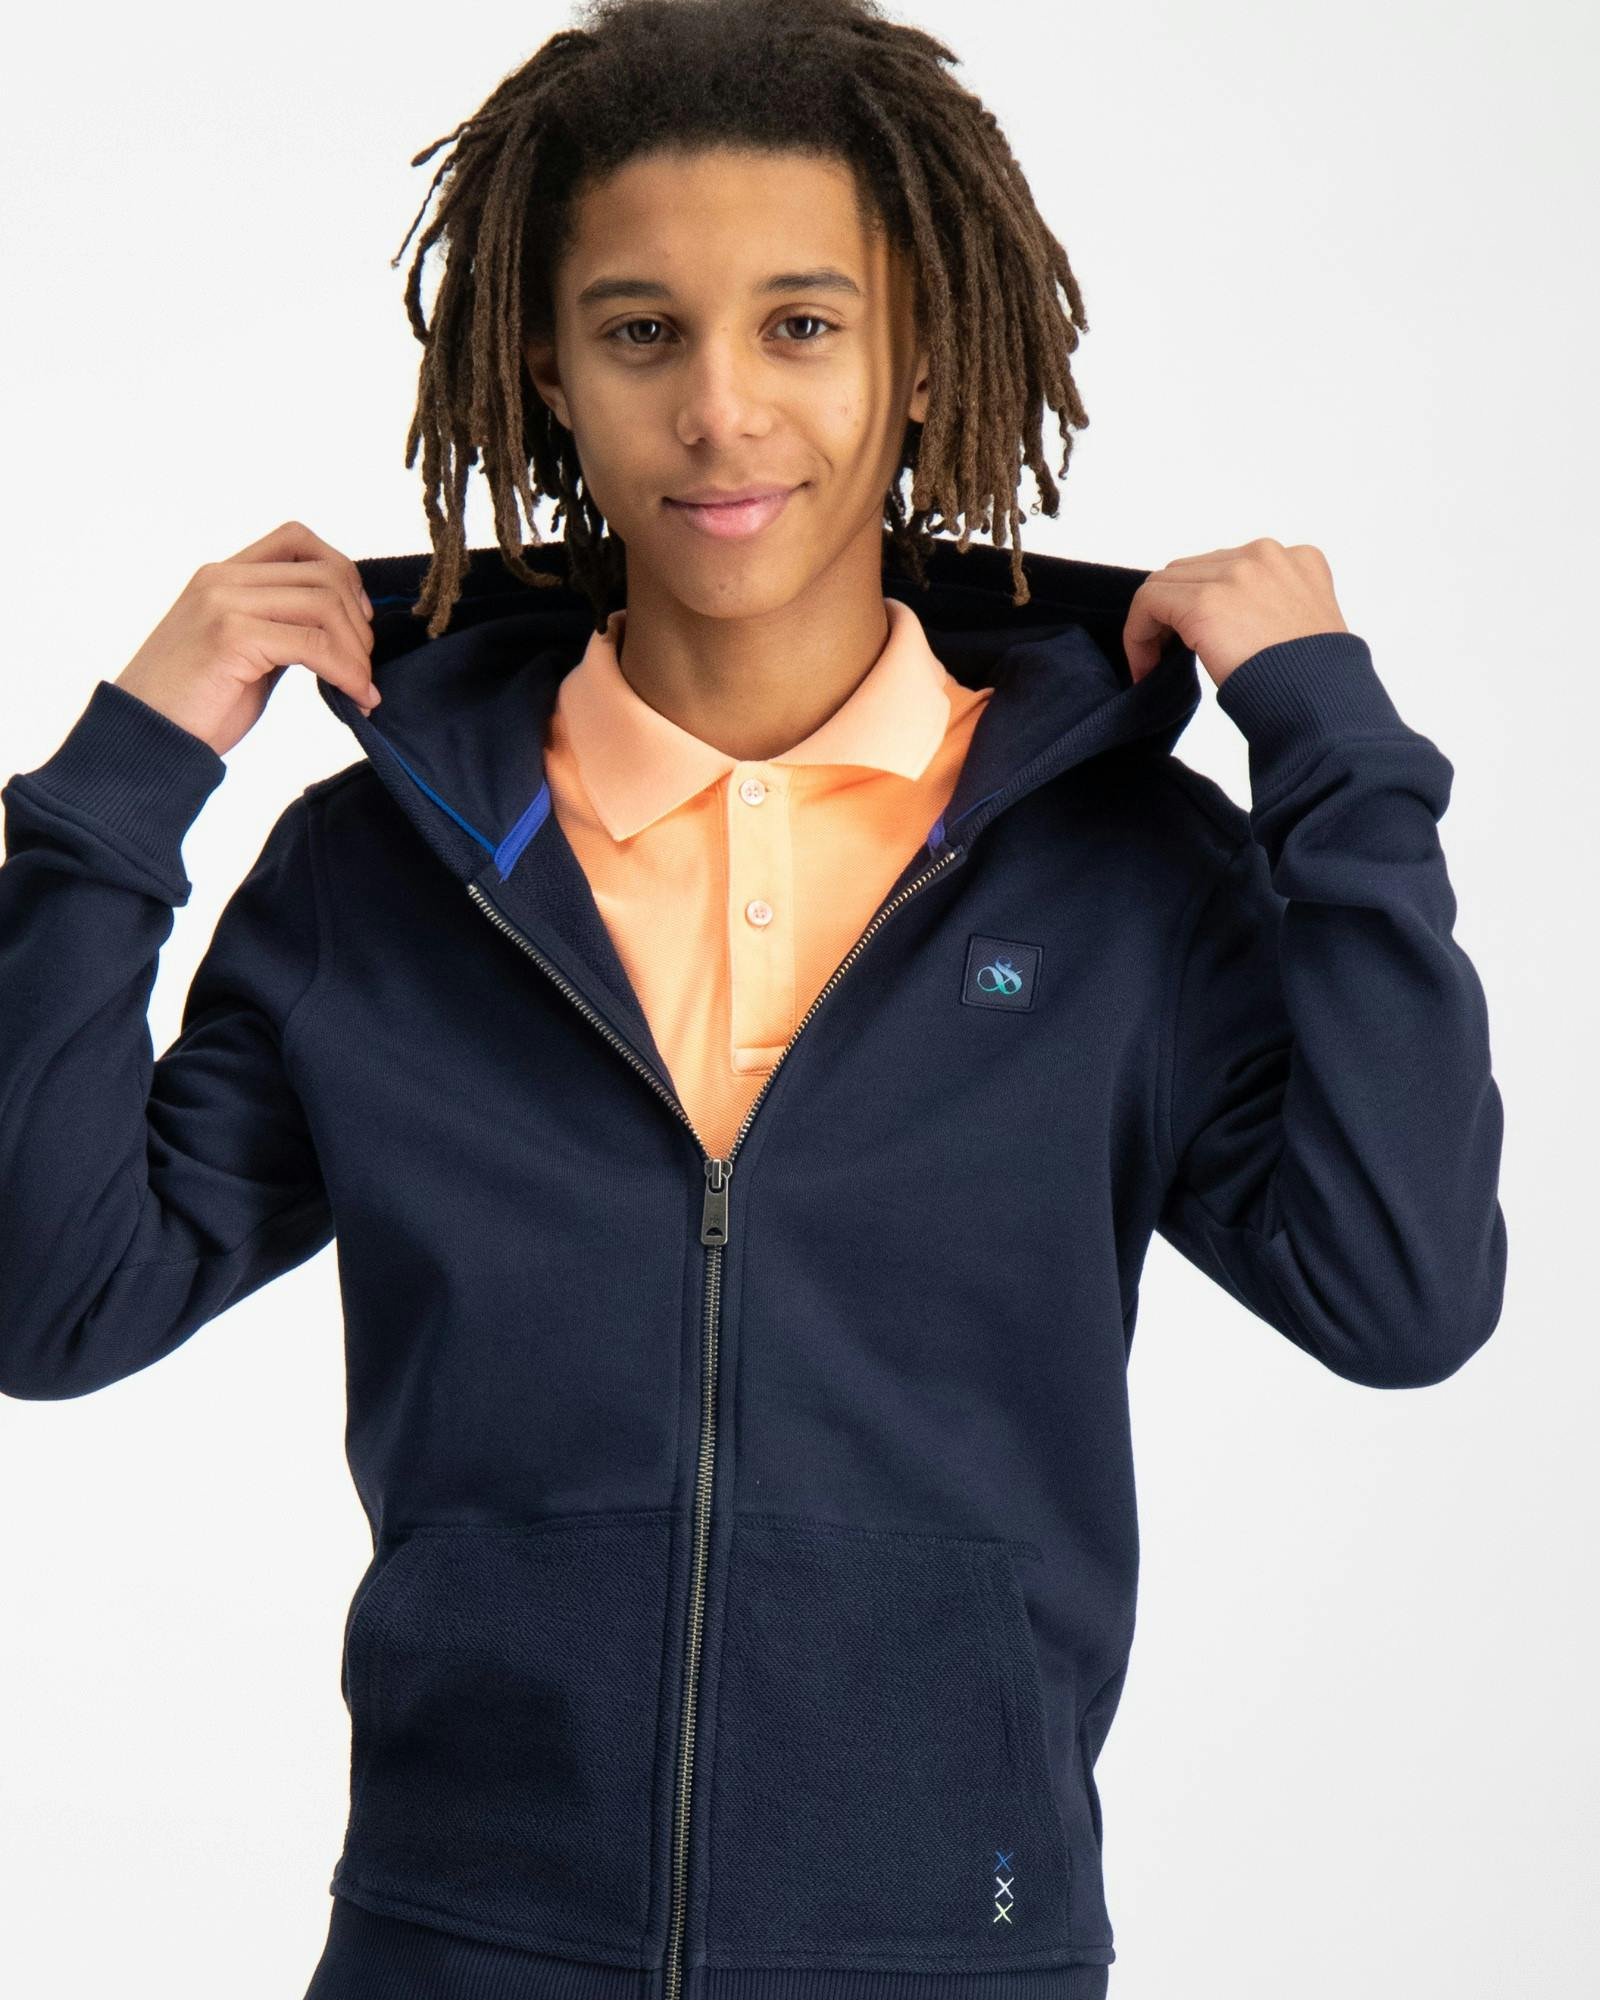 Blau Zip Hoodie für Jungen | Kids Brand Store